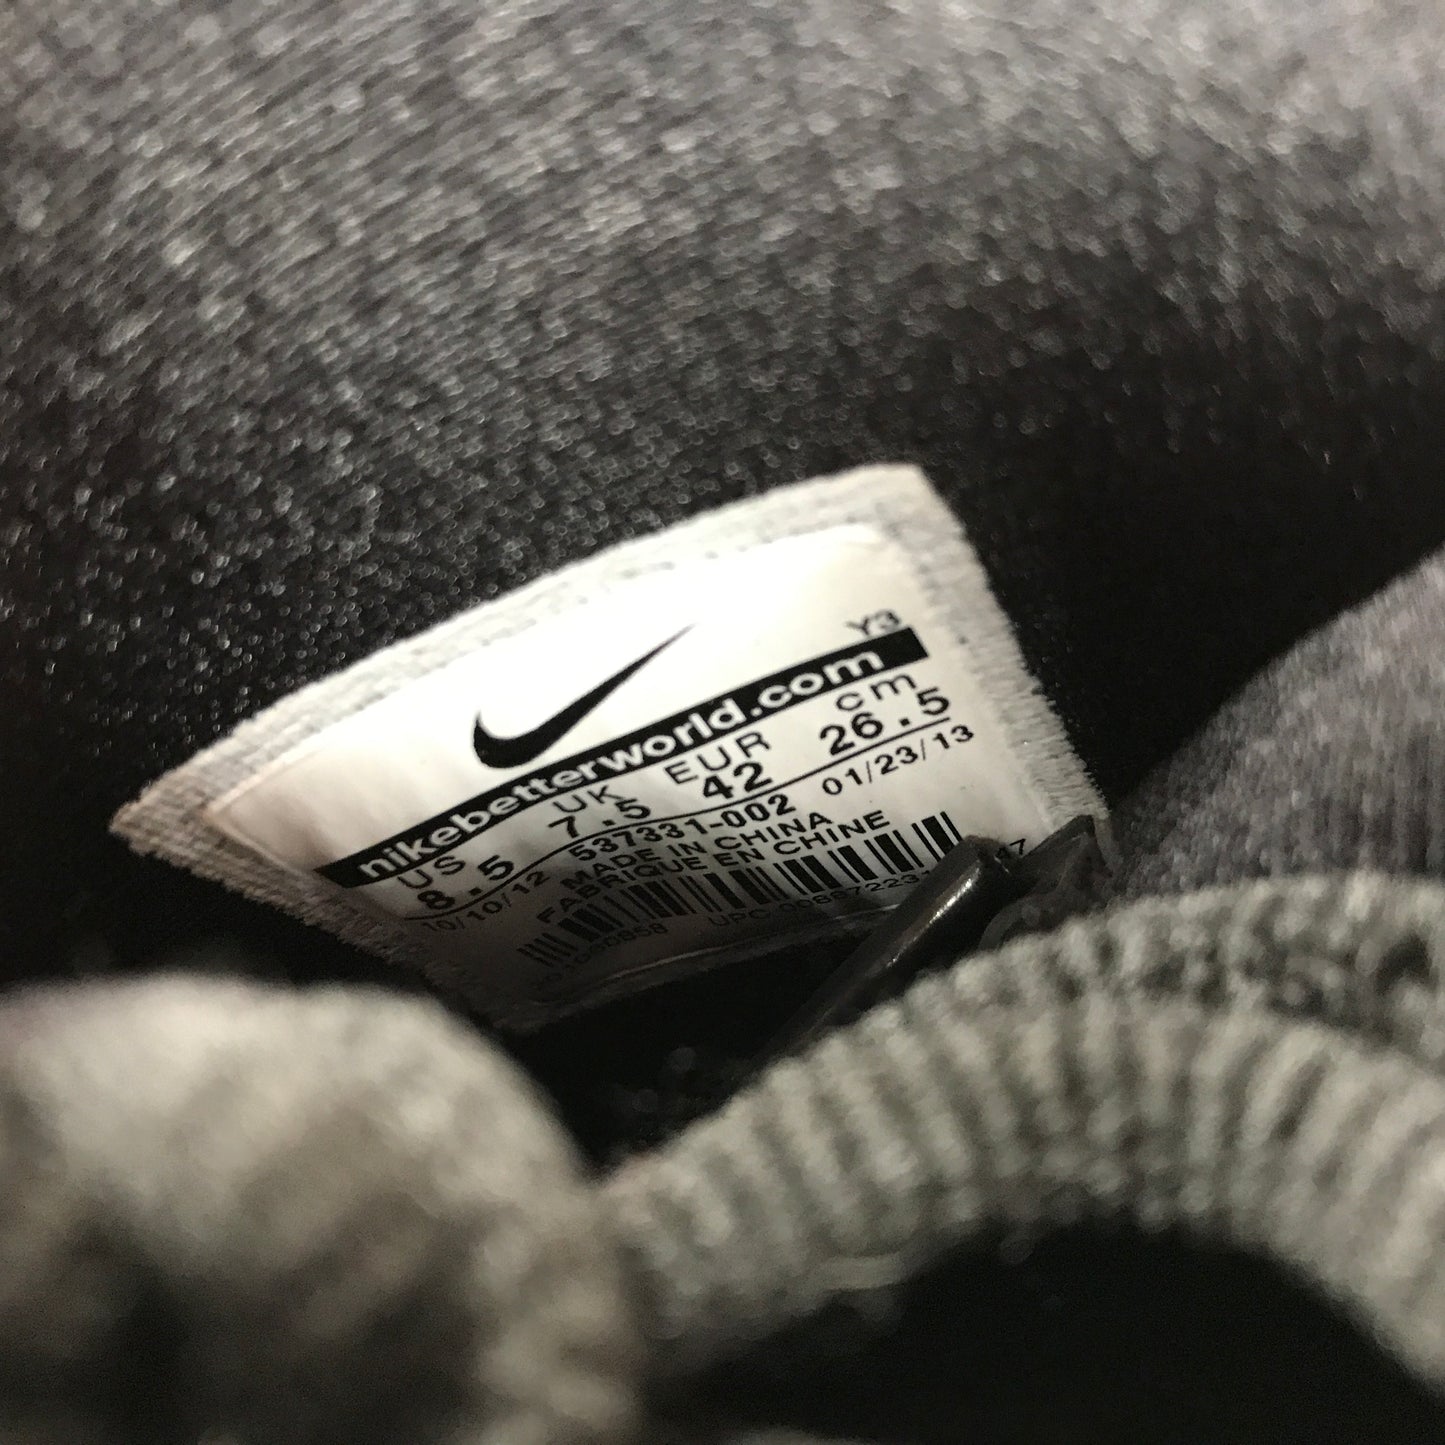 DS Nike Air Penny 5 V Capa de invisibilidad Talla 8.5